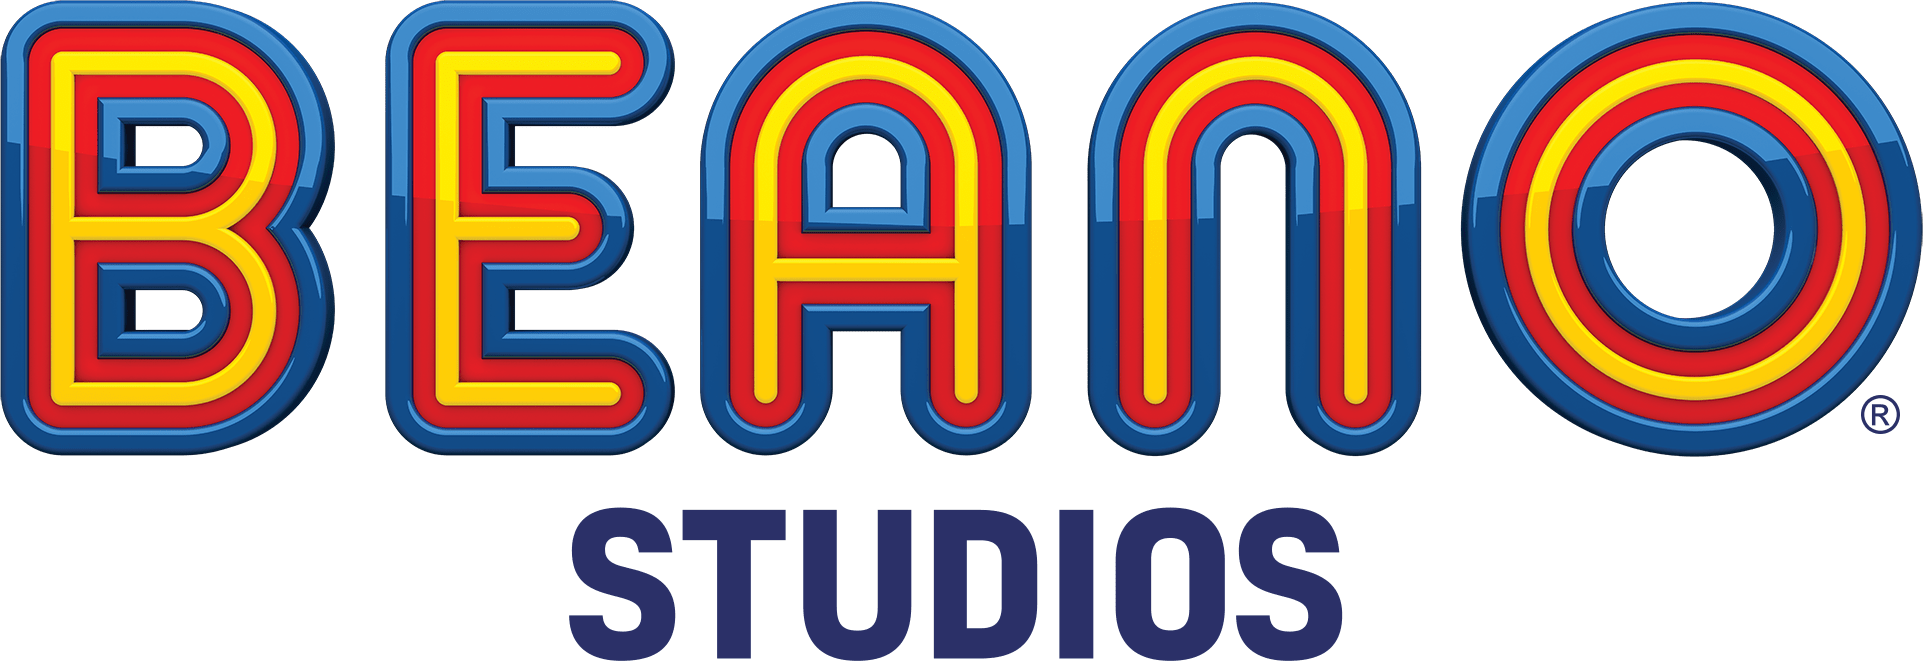 Beano Studios